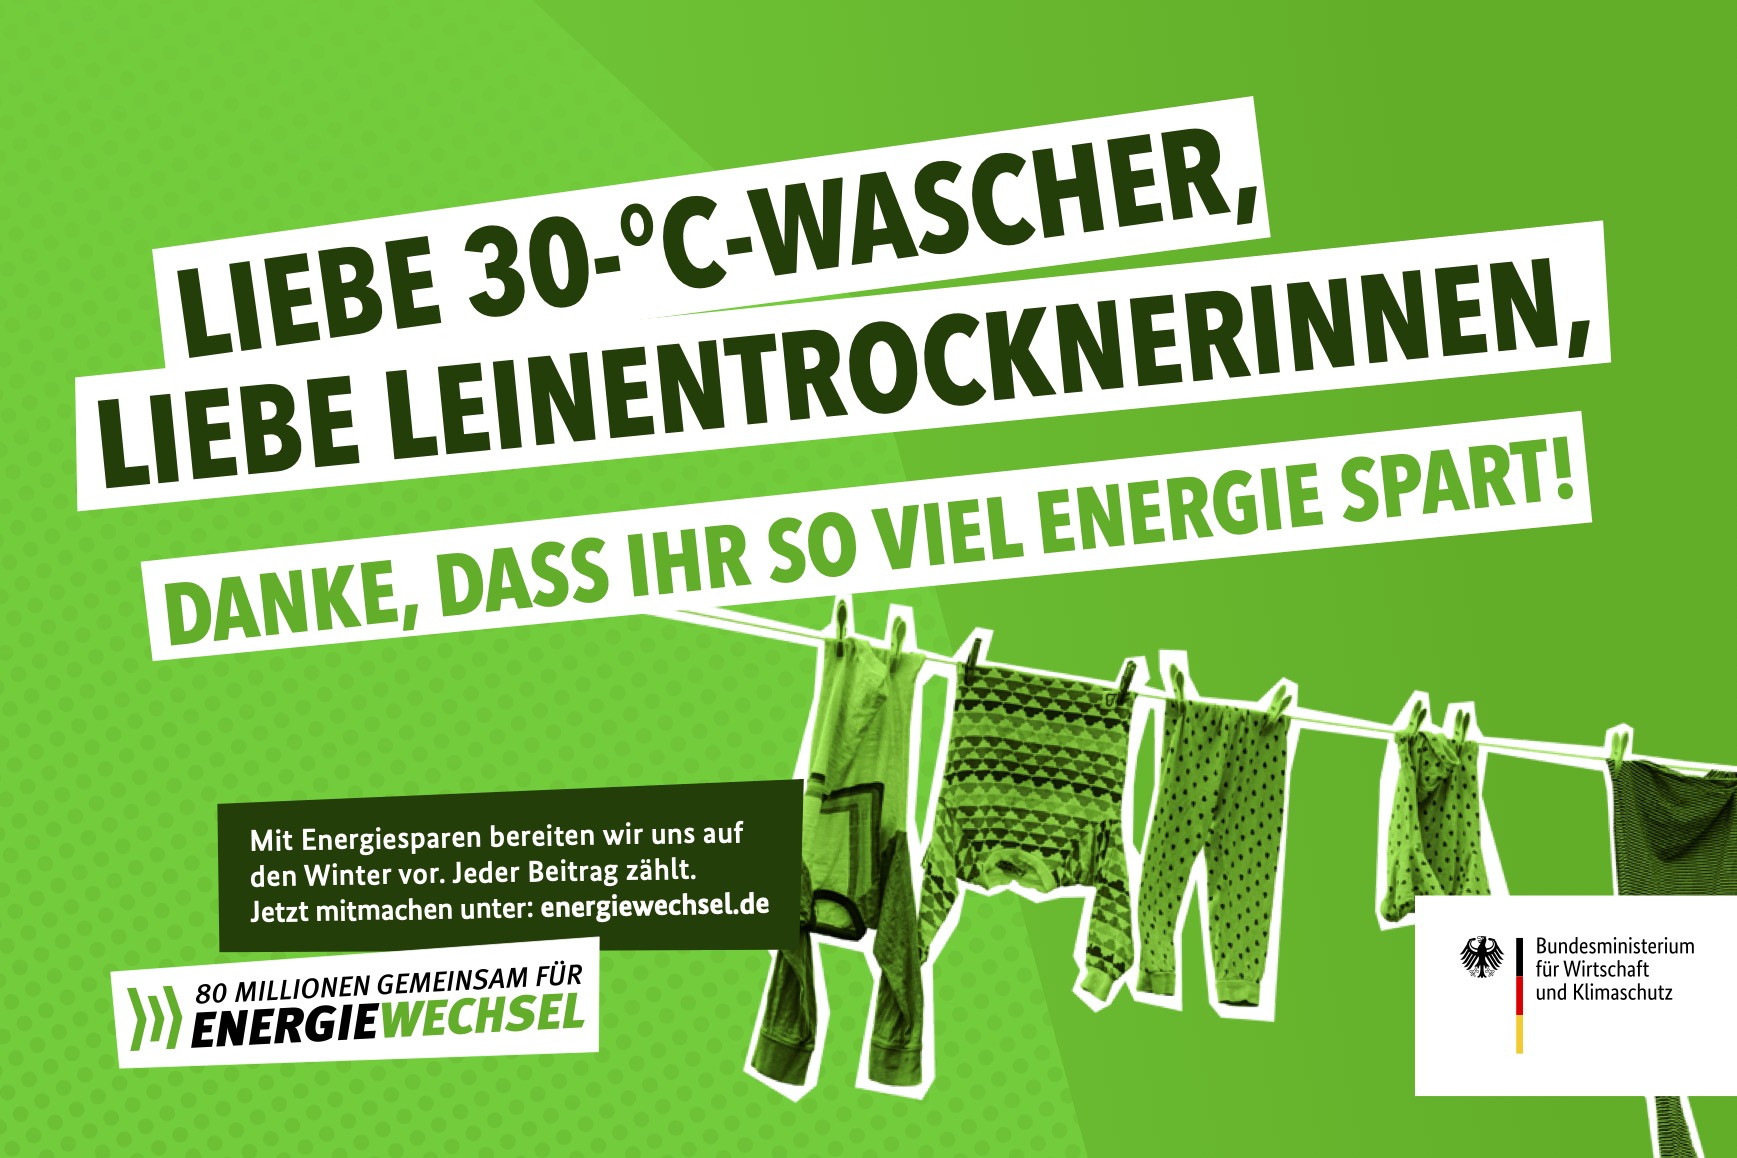 Kampagnenmotiv „Liebe 30-°-Wascher, liebe Leinentrocknerinnen” | 80 Millionen gemeinsam für Energiewechsel